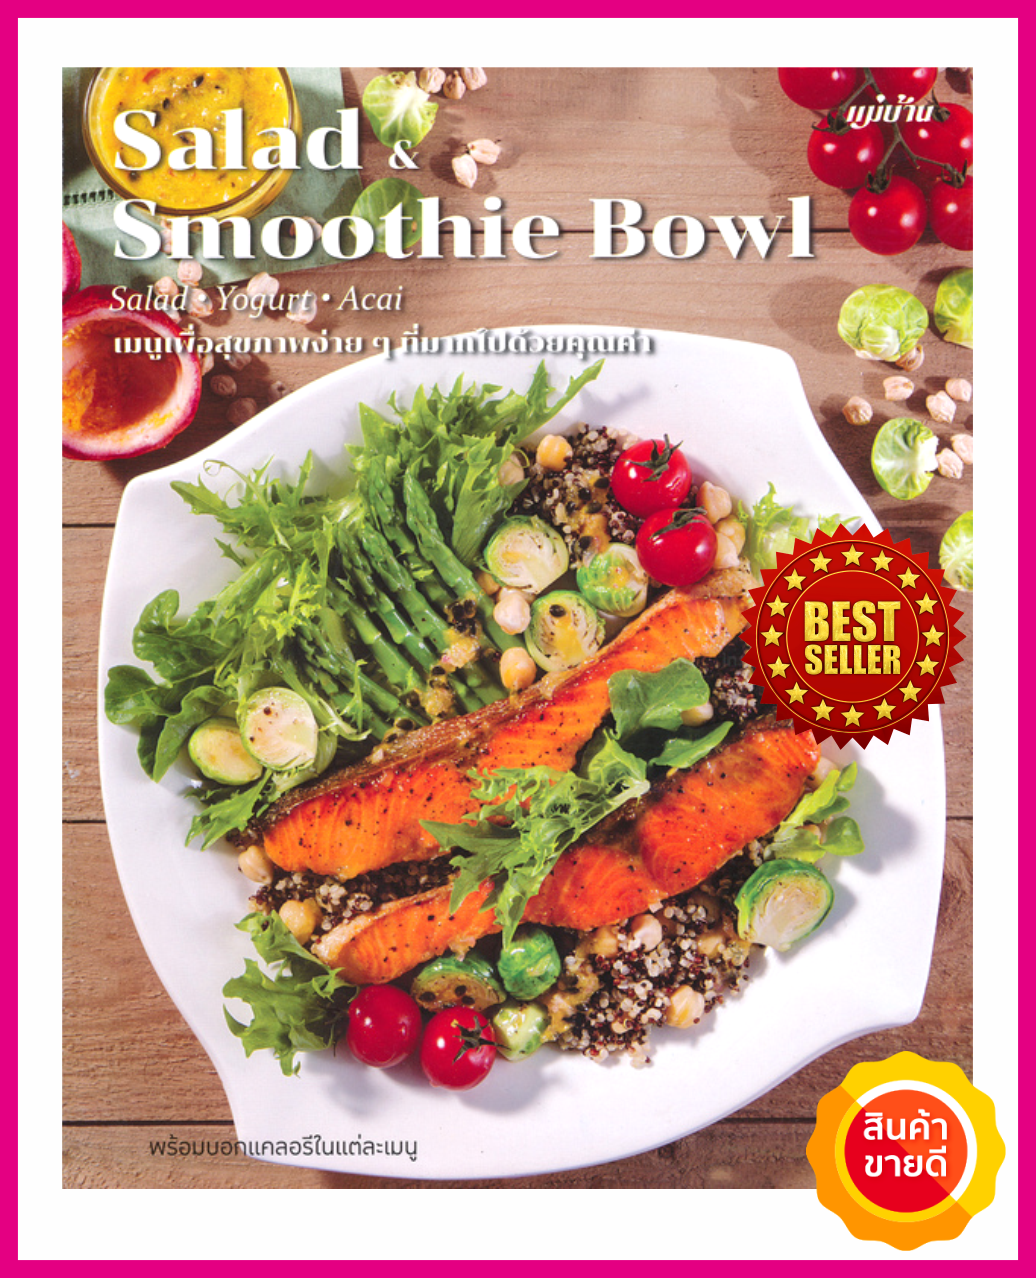 หนังสือ Salad & Smoothie Bowl คู่มือสอนการทำเมนูสลัดเพื่อสุขภาพ ที่มากด้วยคุณค่าจากธรรมชาติ มีสลัดโยเกิร์ต สมูทตี้ เหมาะทำอาหารคลีน คีโต ไดเอท